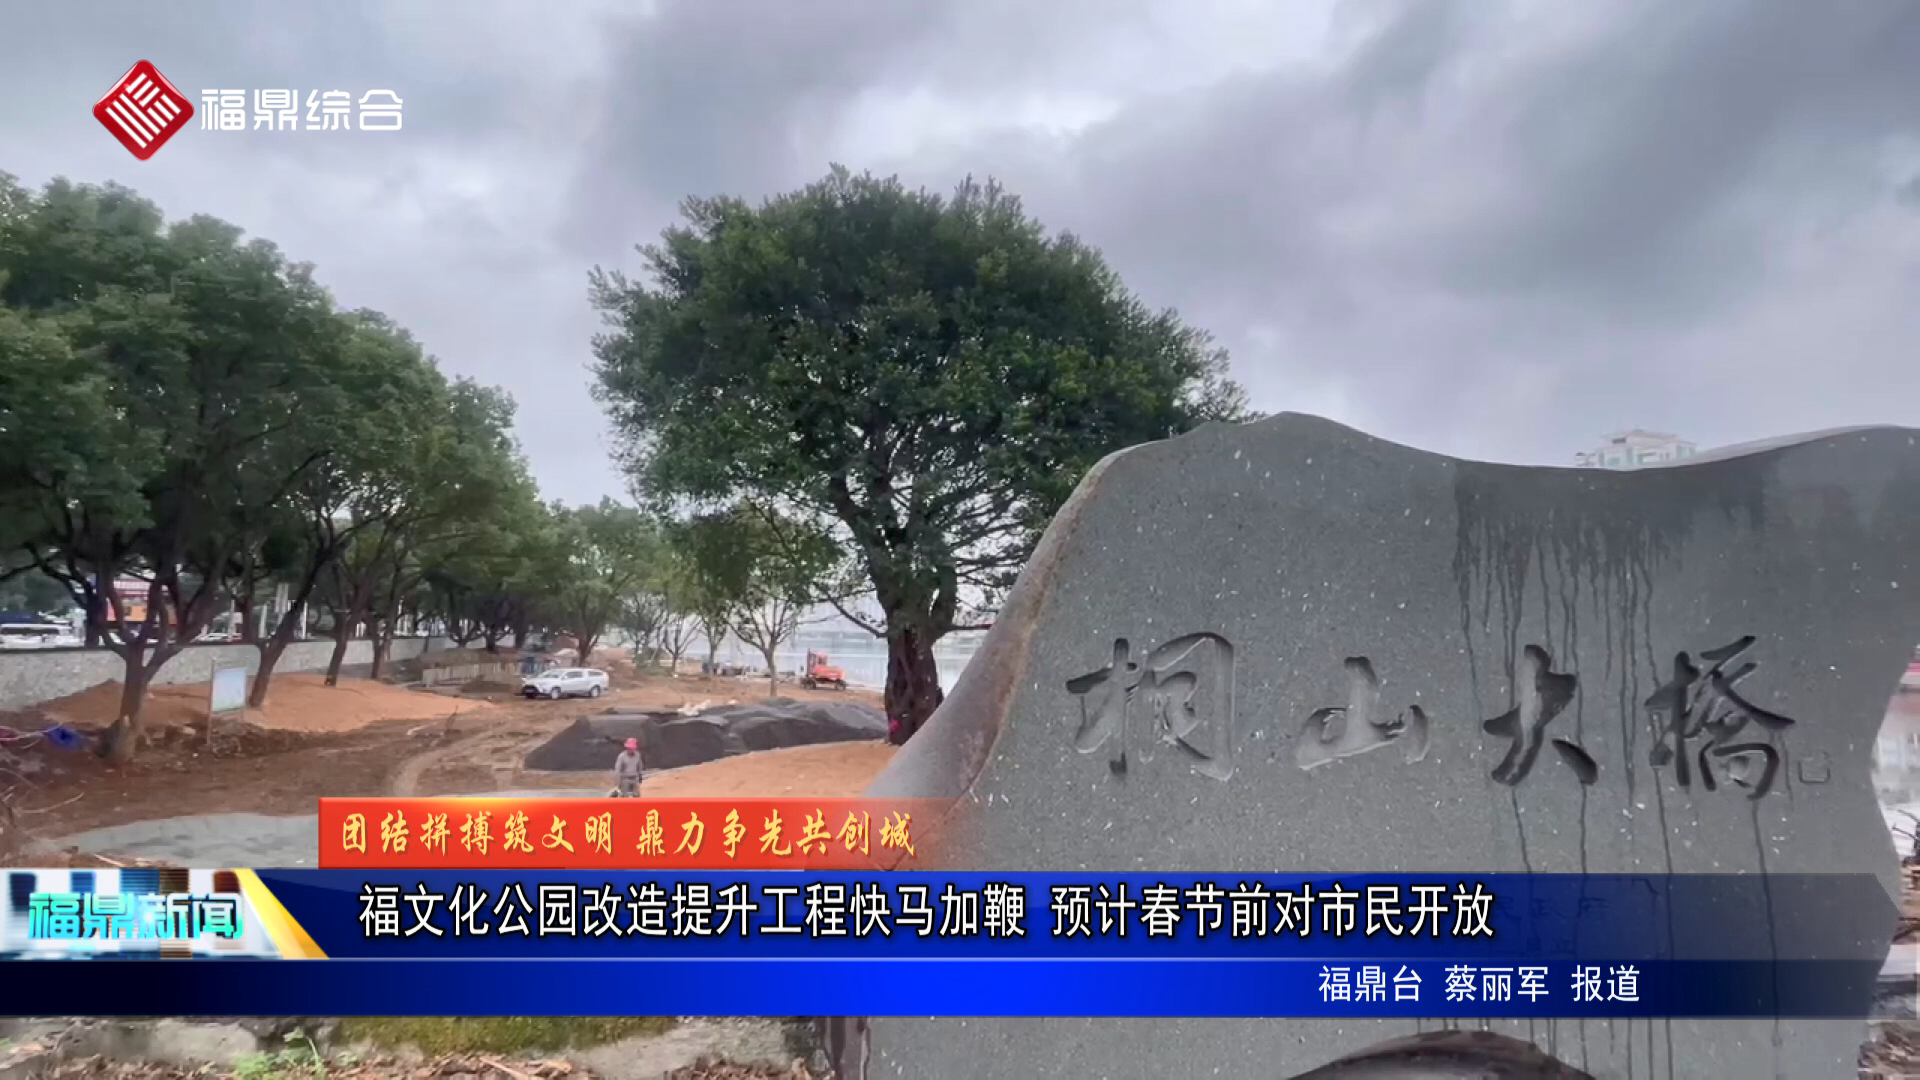 福文化公园改造提升工程快马加鞭 预计春节前对市民开放